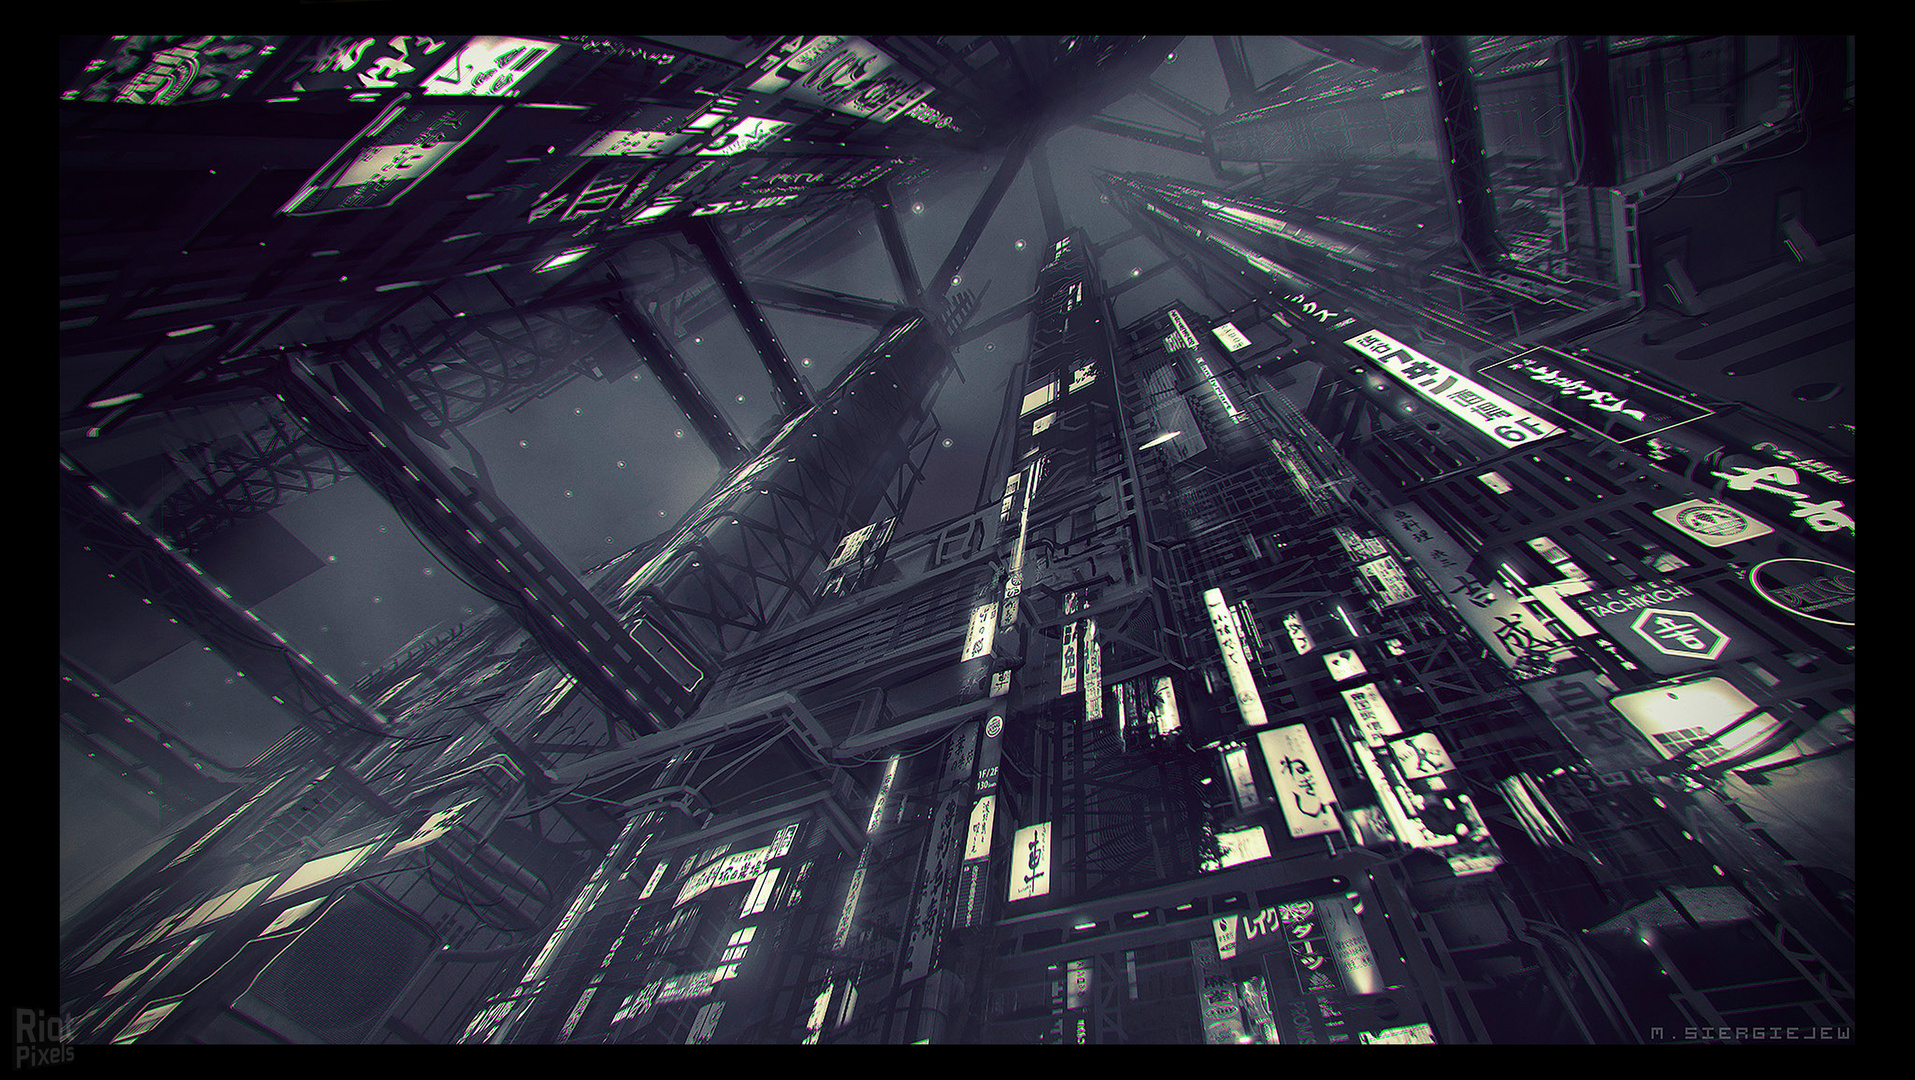 Ghostrunner Video Games Cyberpunk Science Fiction Futuristic Artwork Digital Art 2D Concept Art City 1915x1080